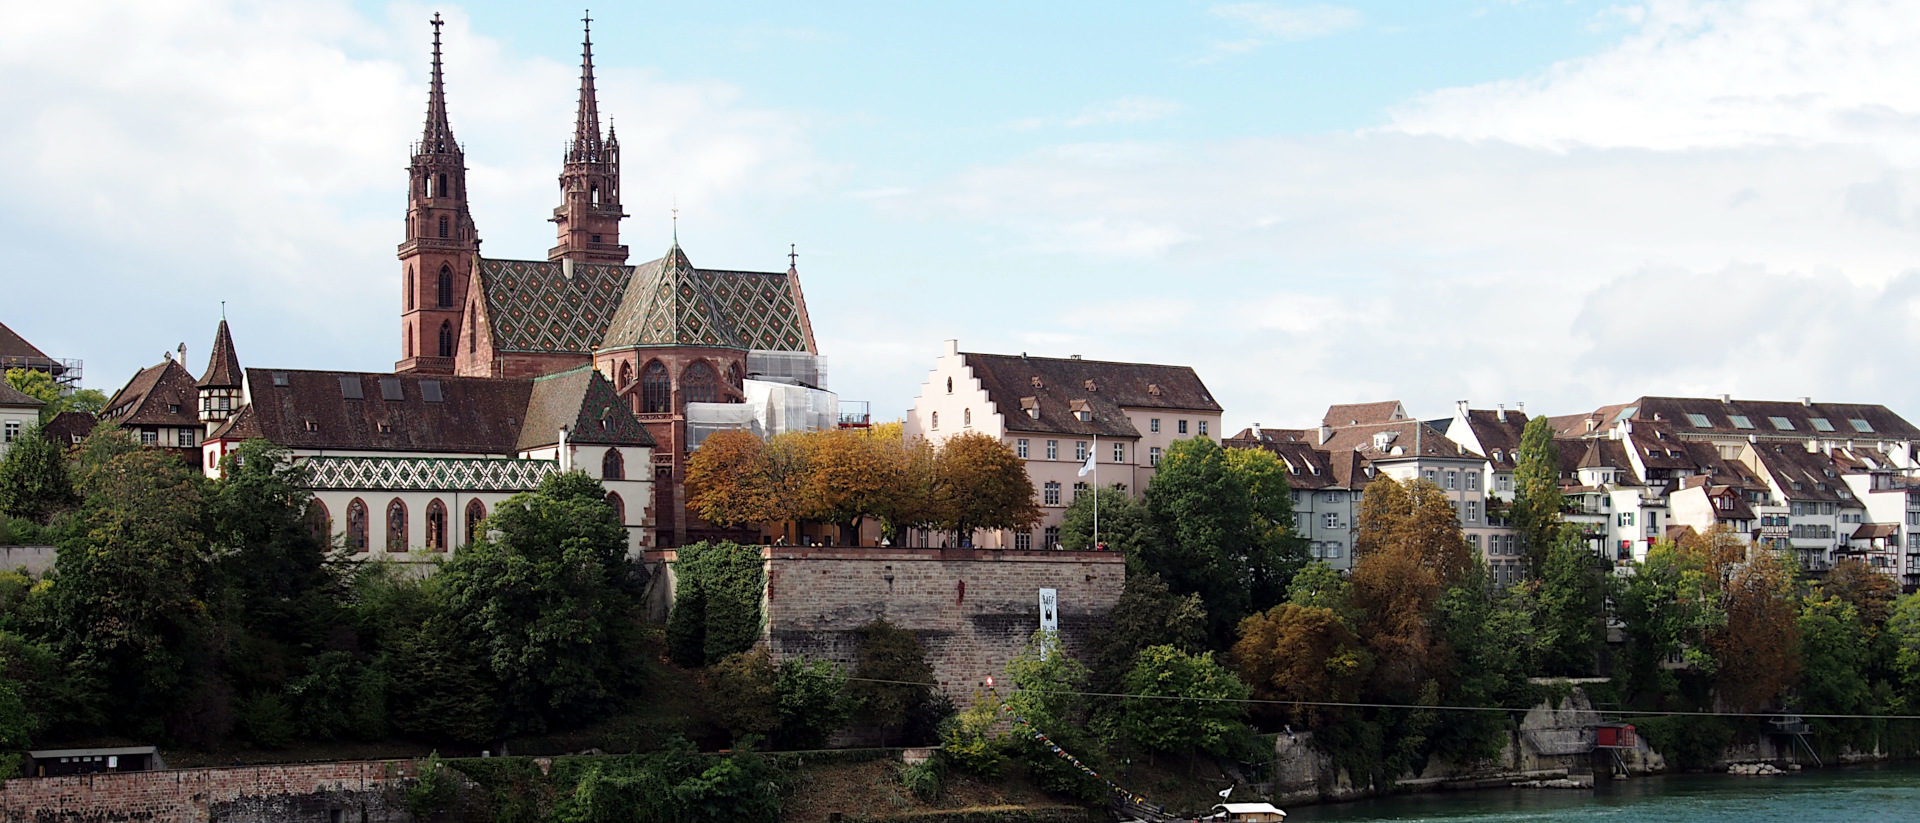 Die Pfalz als Terrasse des Münsters 18 Meter über dem Rhein ist eines der Wahrzeichen Basels